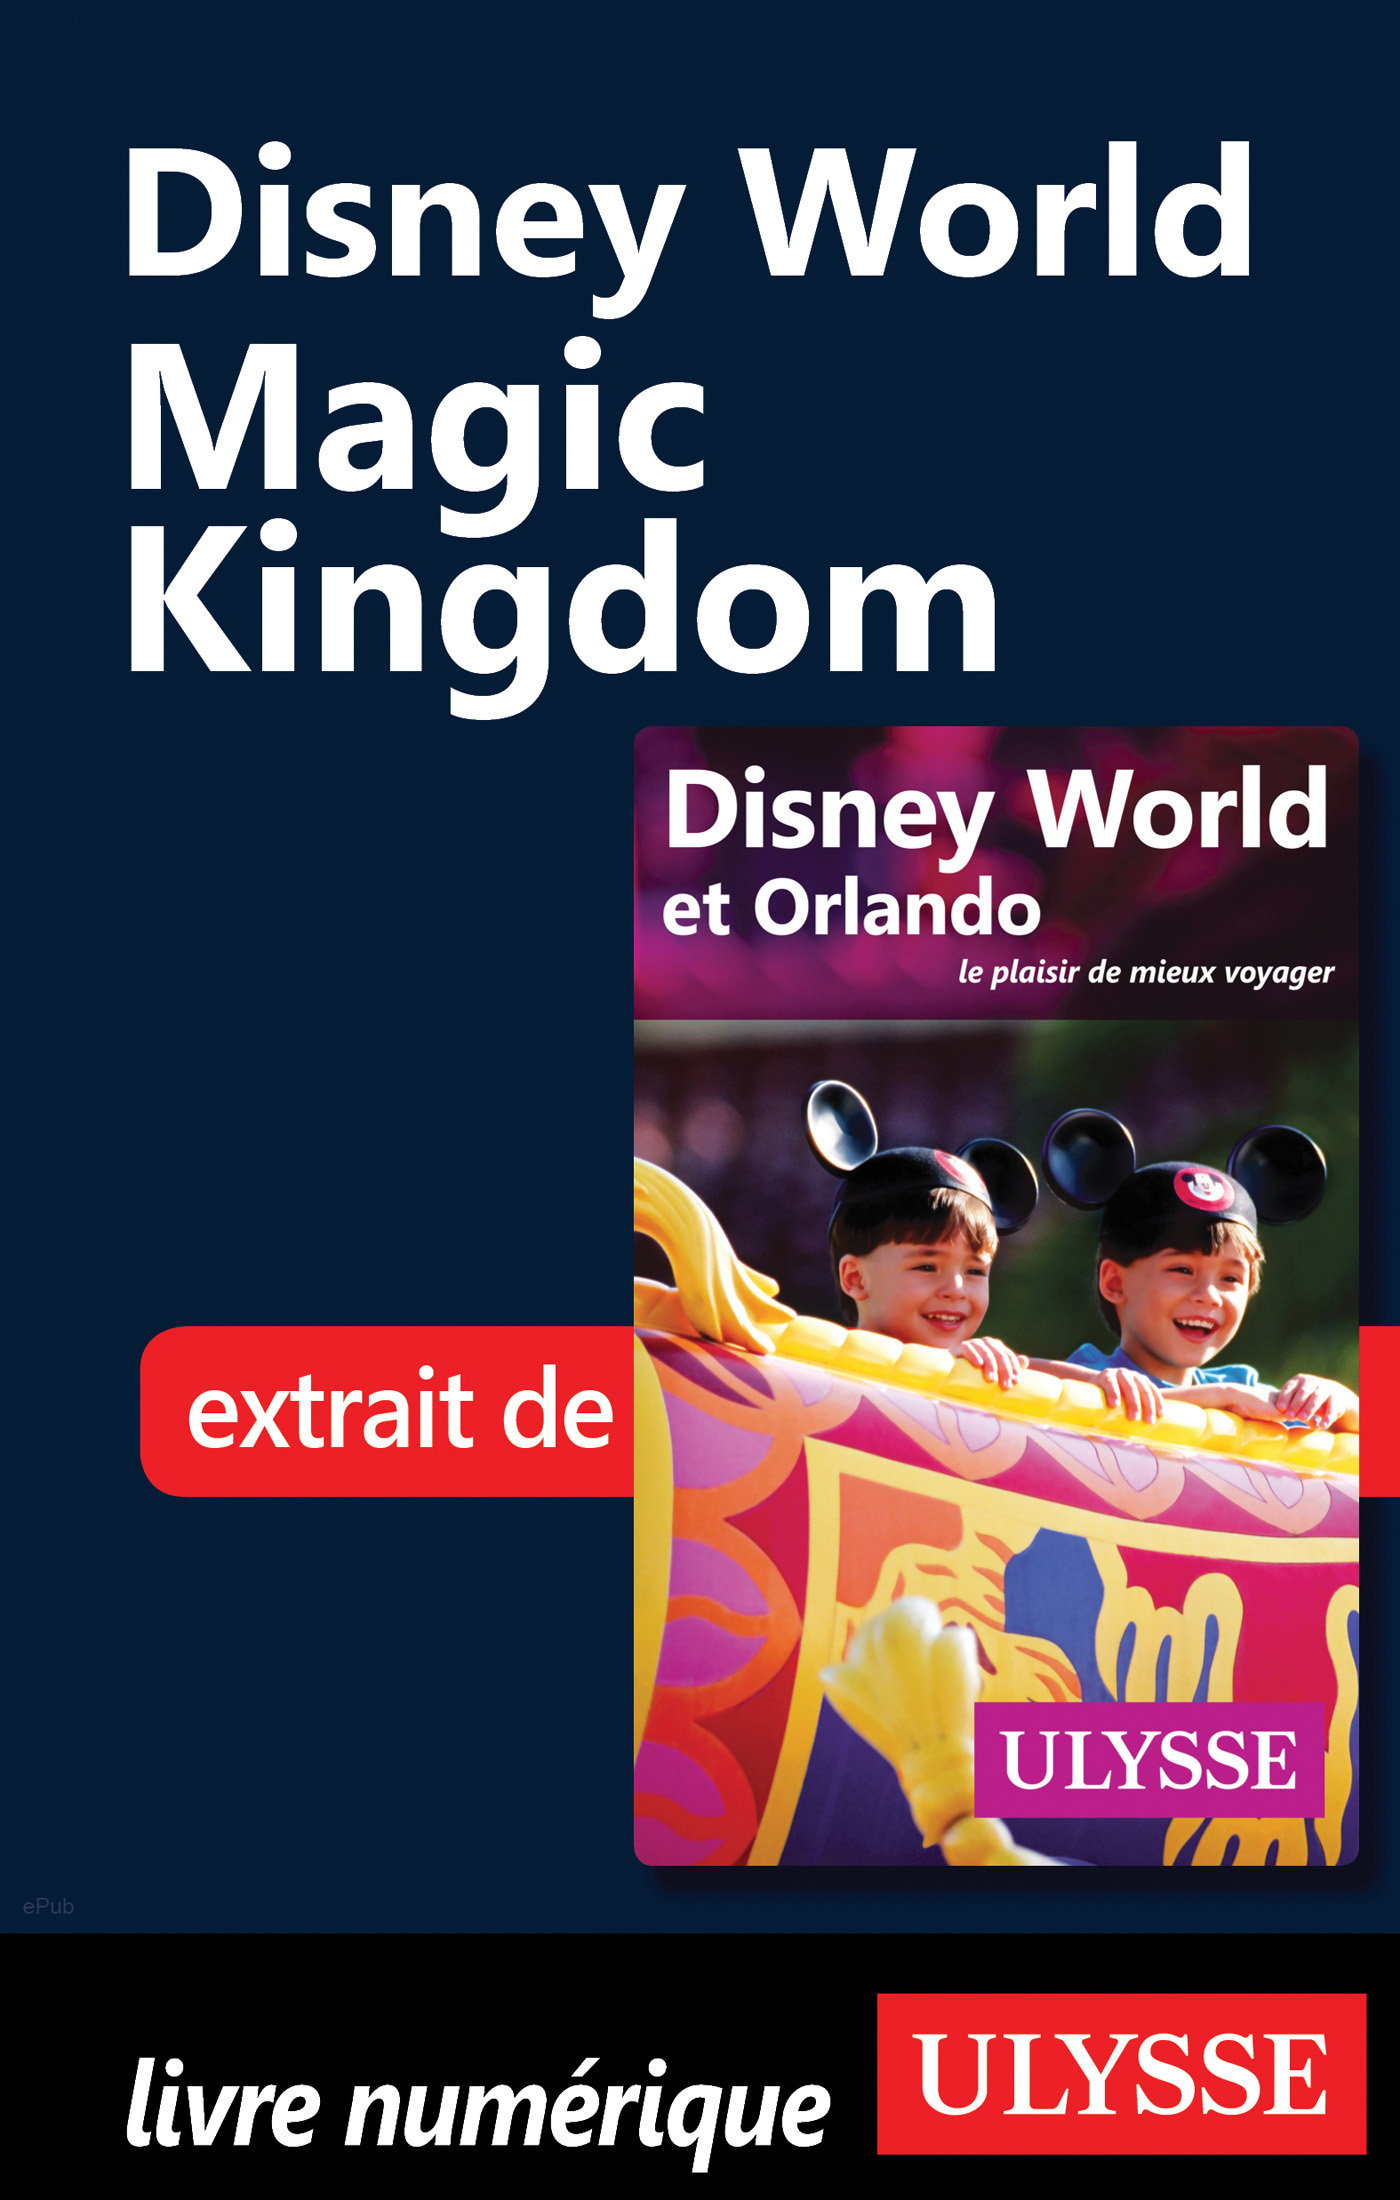 Disney World - Kingdom (ebook) Viajes y turismo · El Corte Inglés